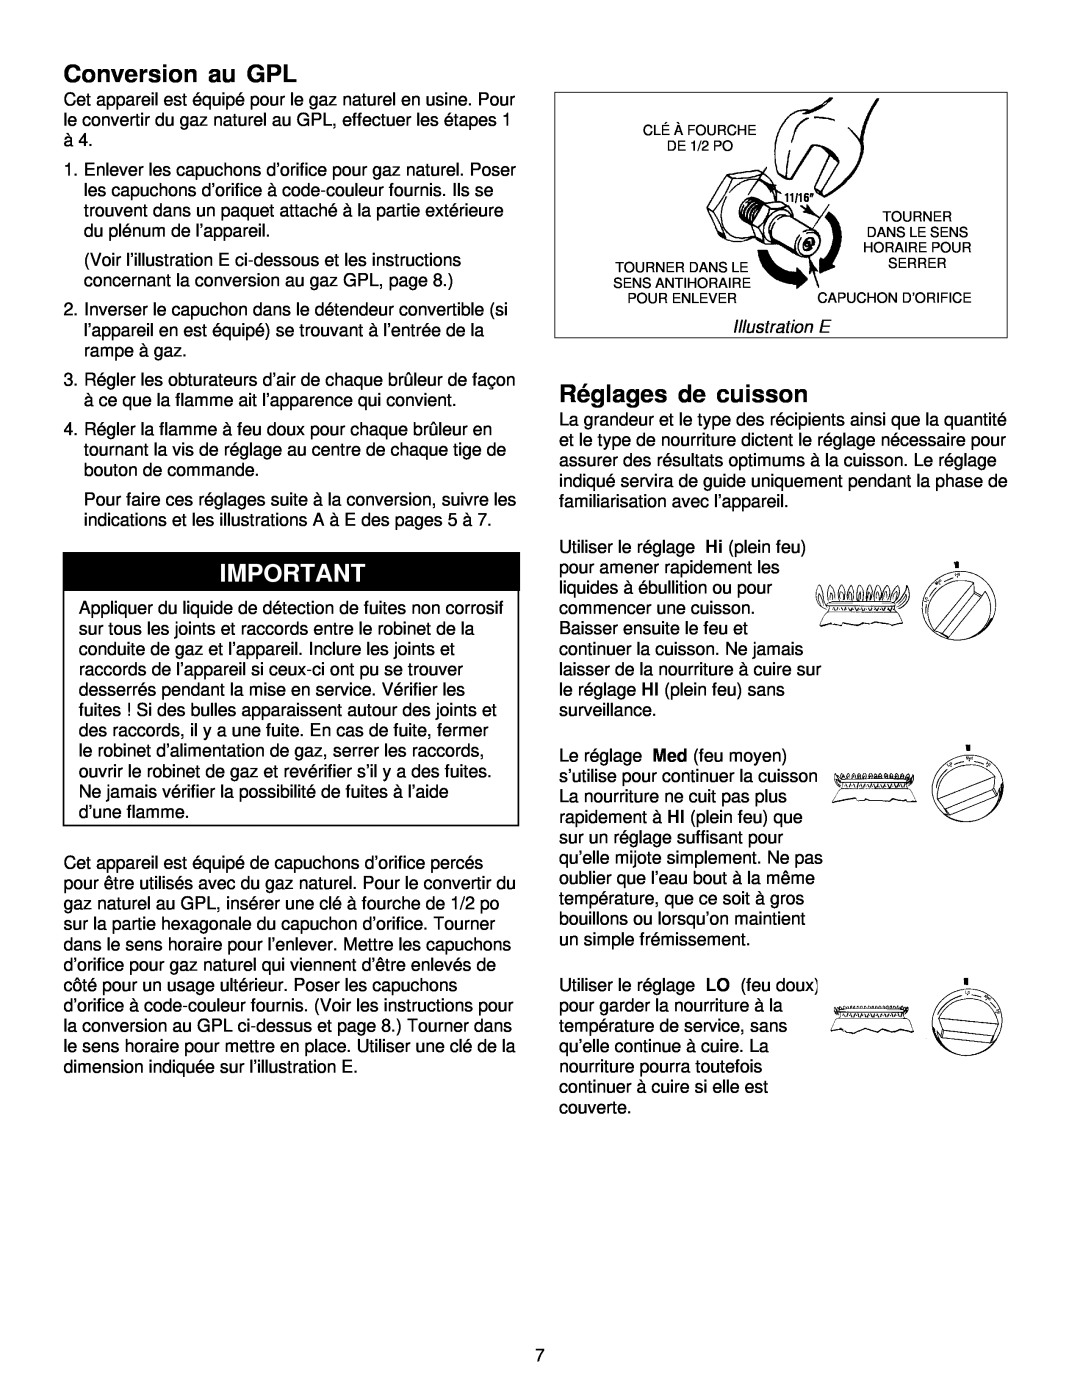 Jenn-Air JGD8348CDP installation instructions Conversion au GPL, Réglages de cuisson, Illustration E 